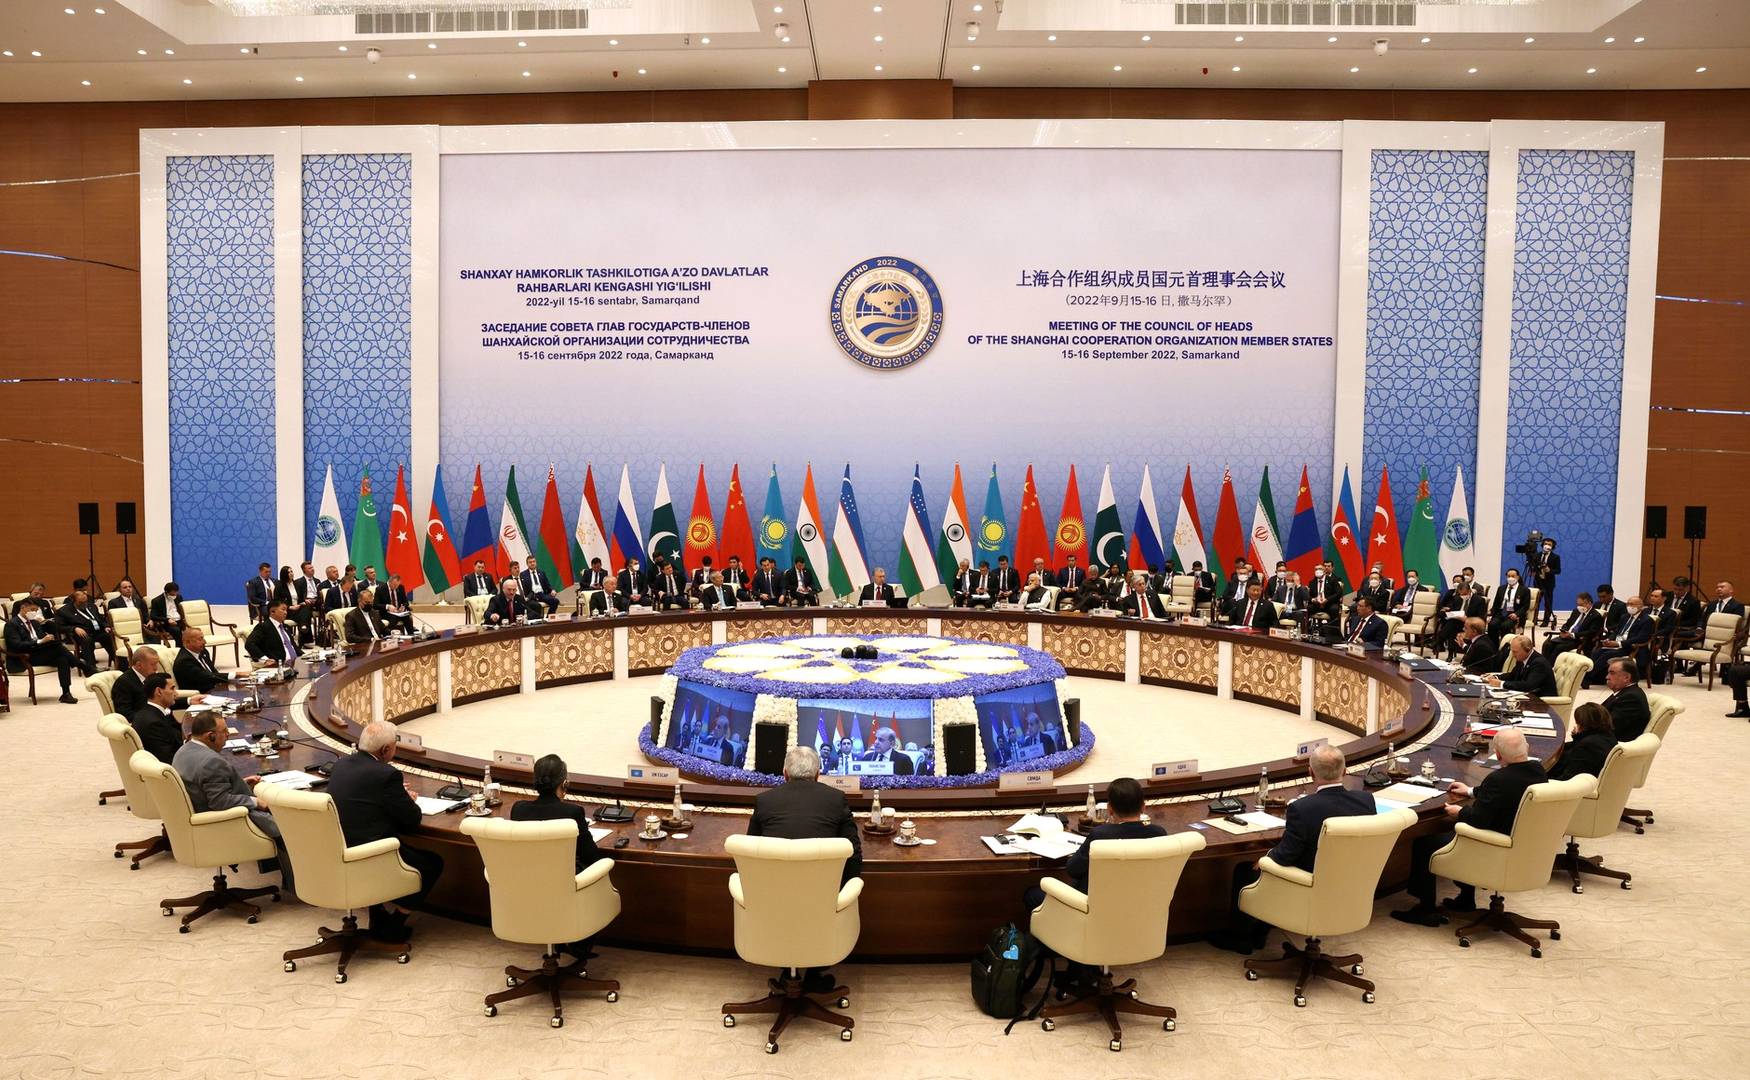 Заседание Совета глав государств — членов ШОС в расширенном составе